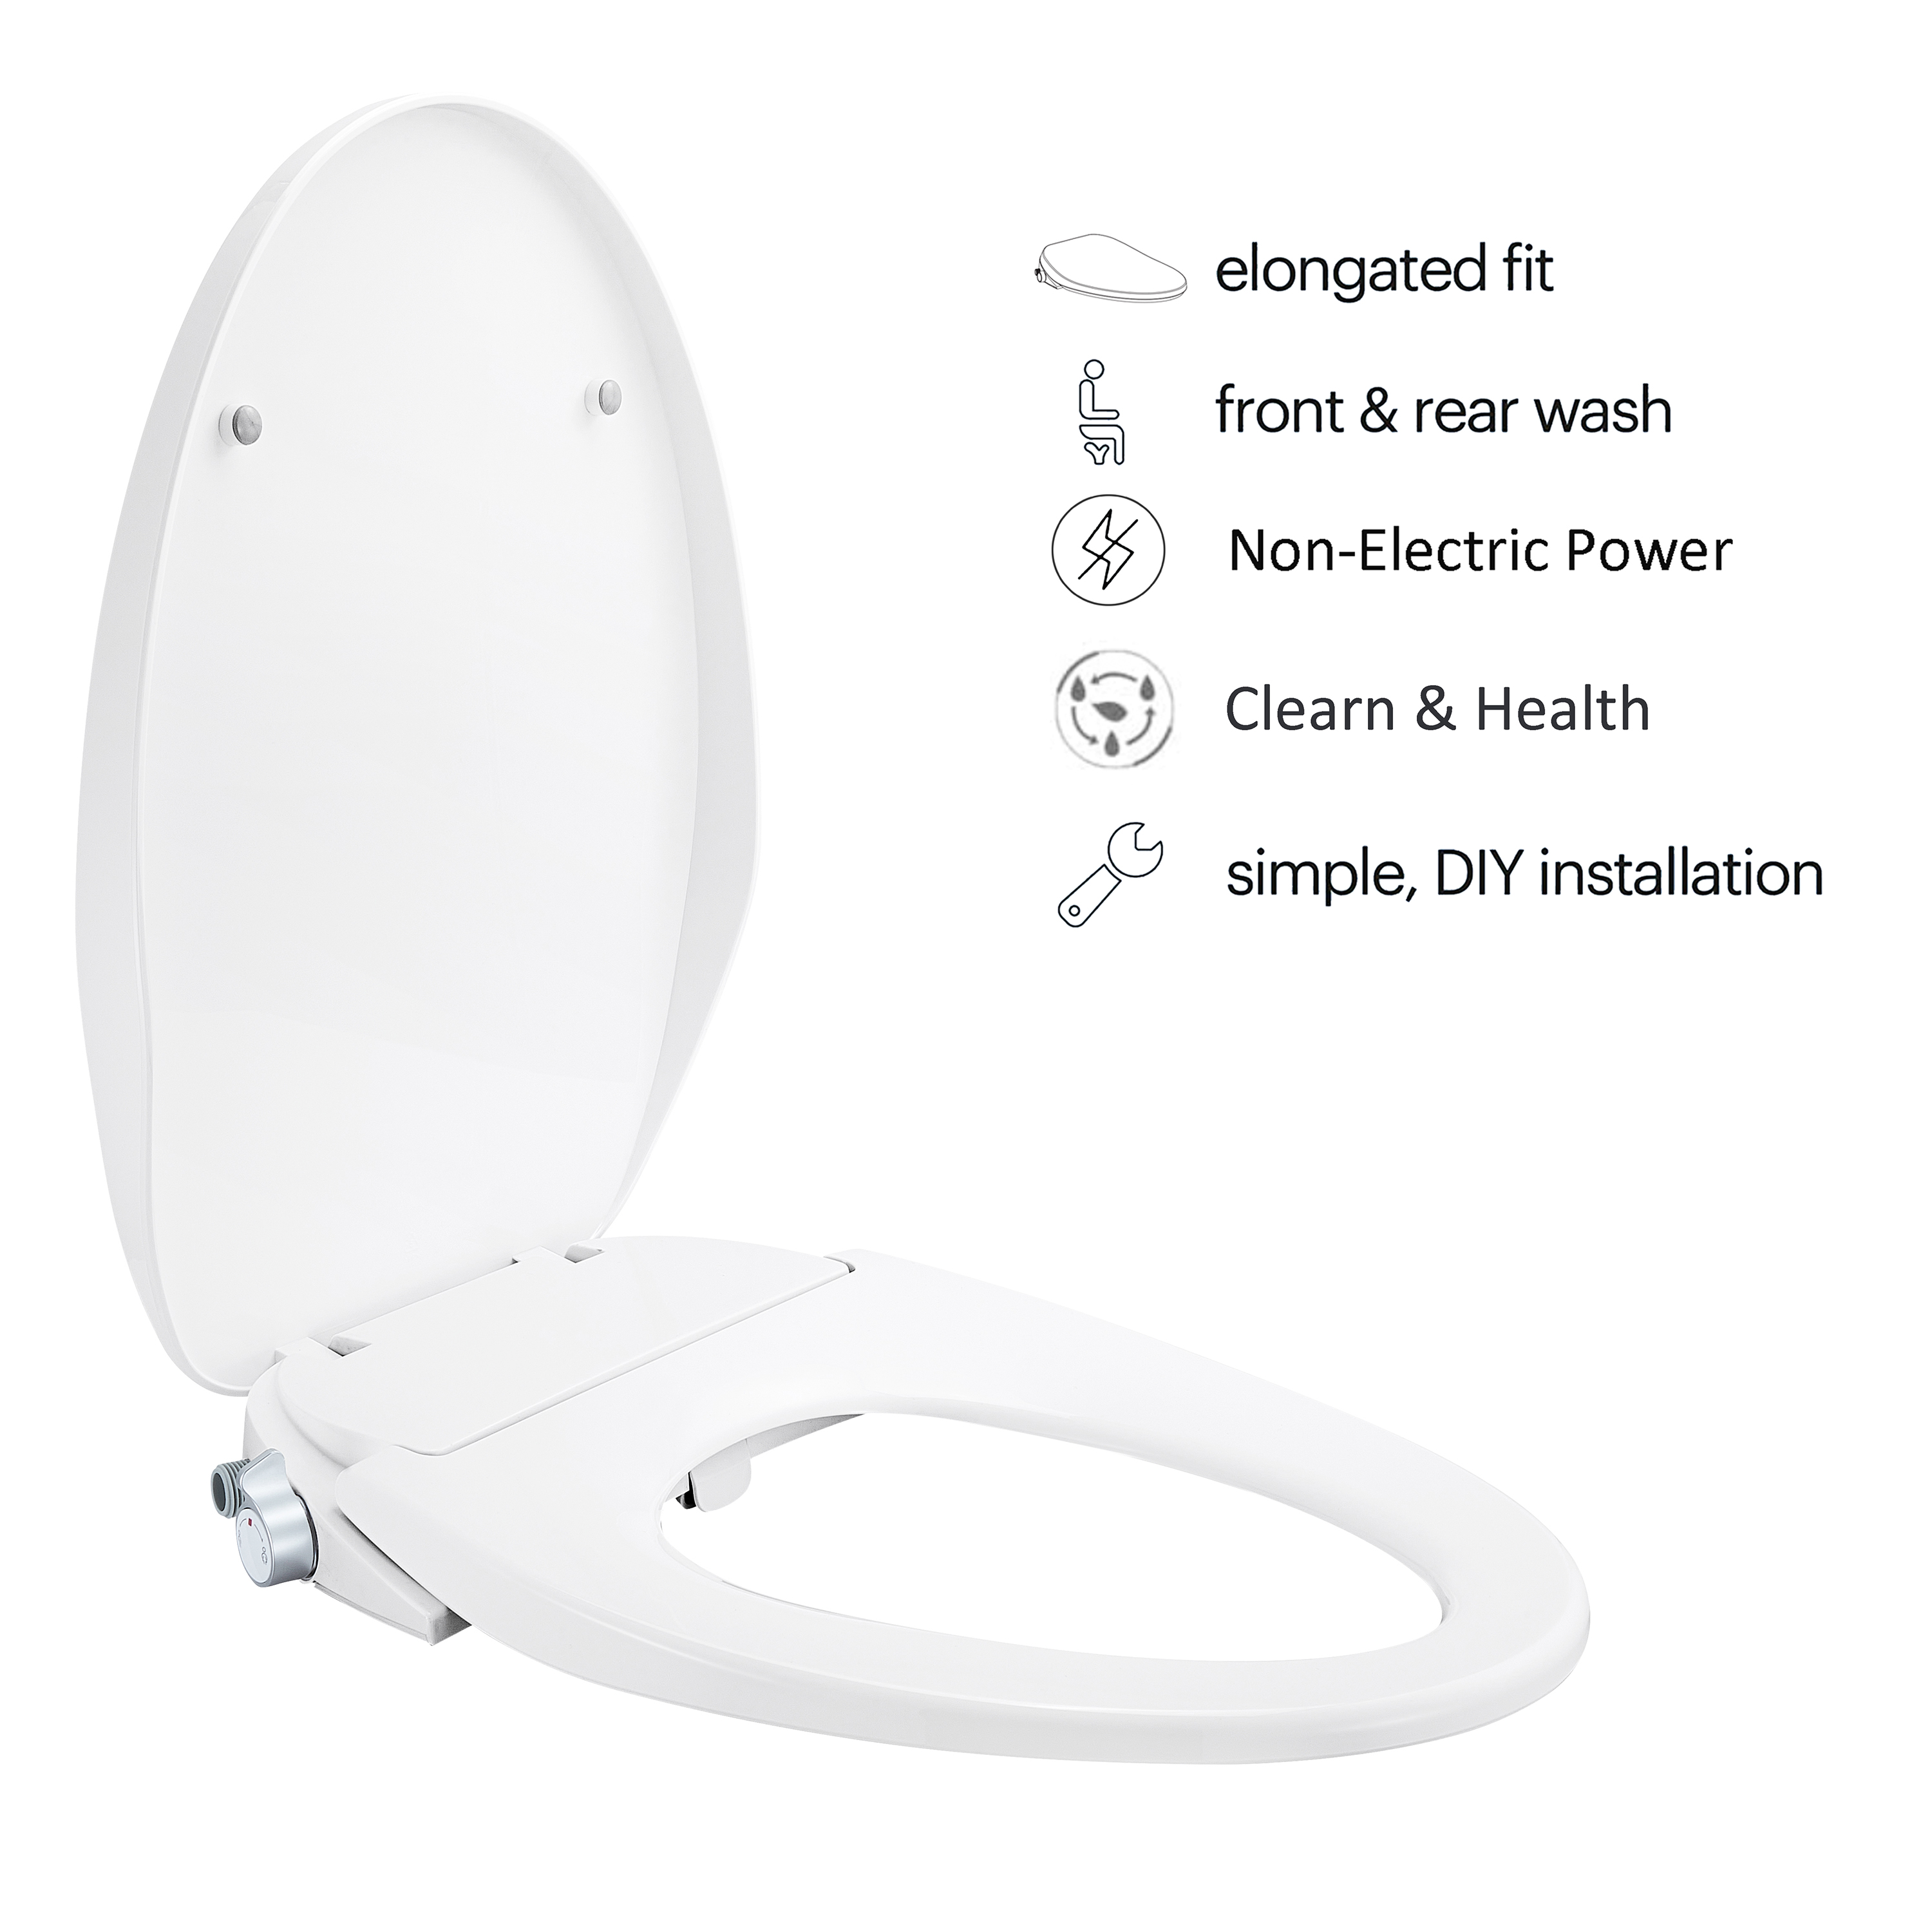 MEJE #VB-L Nicht-elektrischer Bidet-Toilettensitz, passend für längliche Toiletten, weiß – Doppeldüse mit verstellbaren Sprühern, einfache Installation…